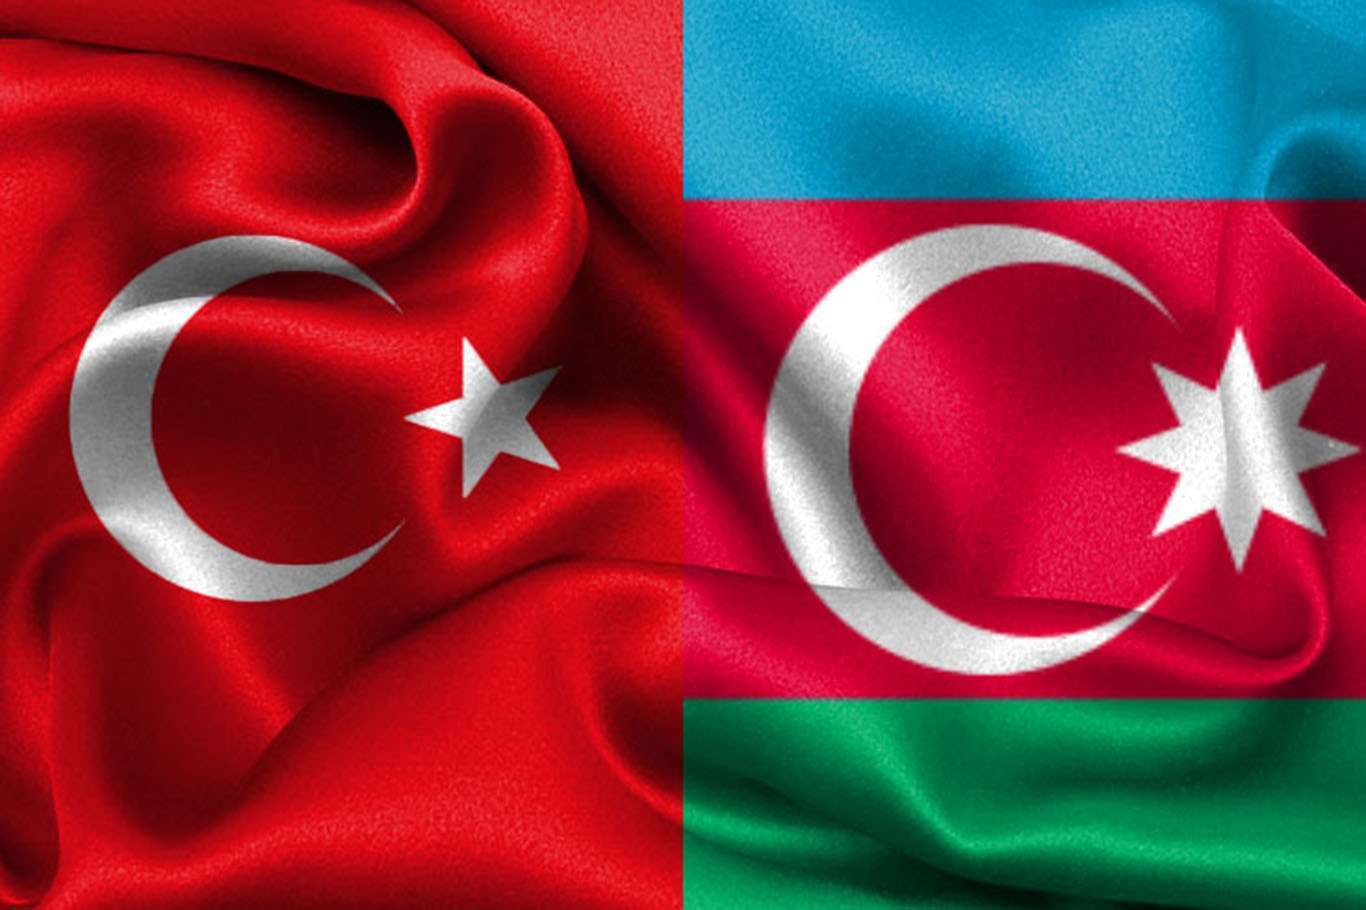 флаг турции и азербайджана вместе